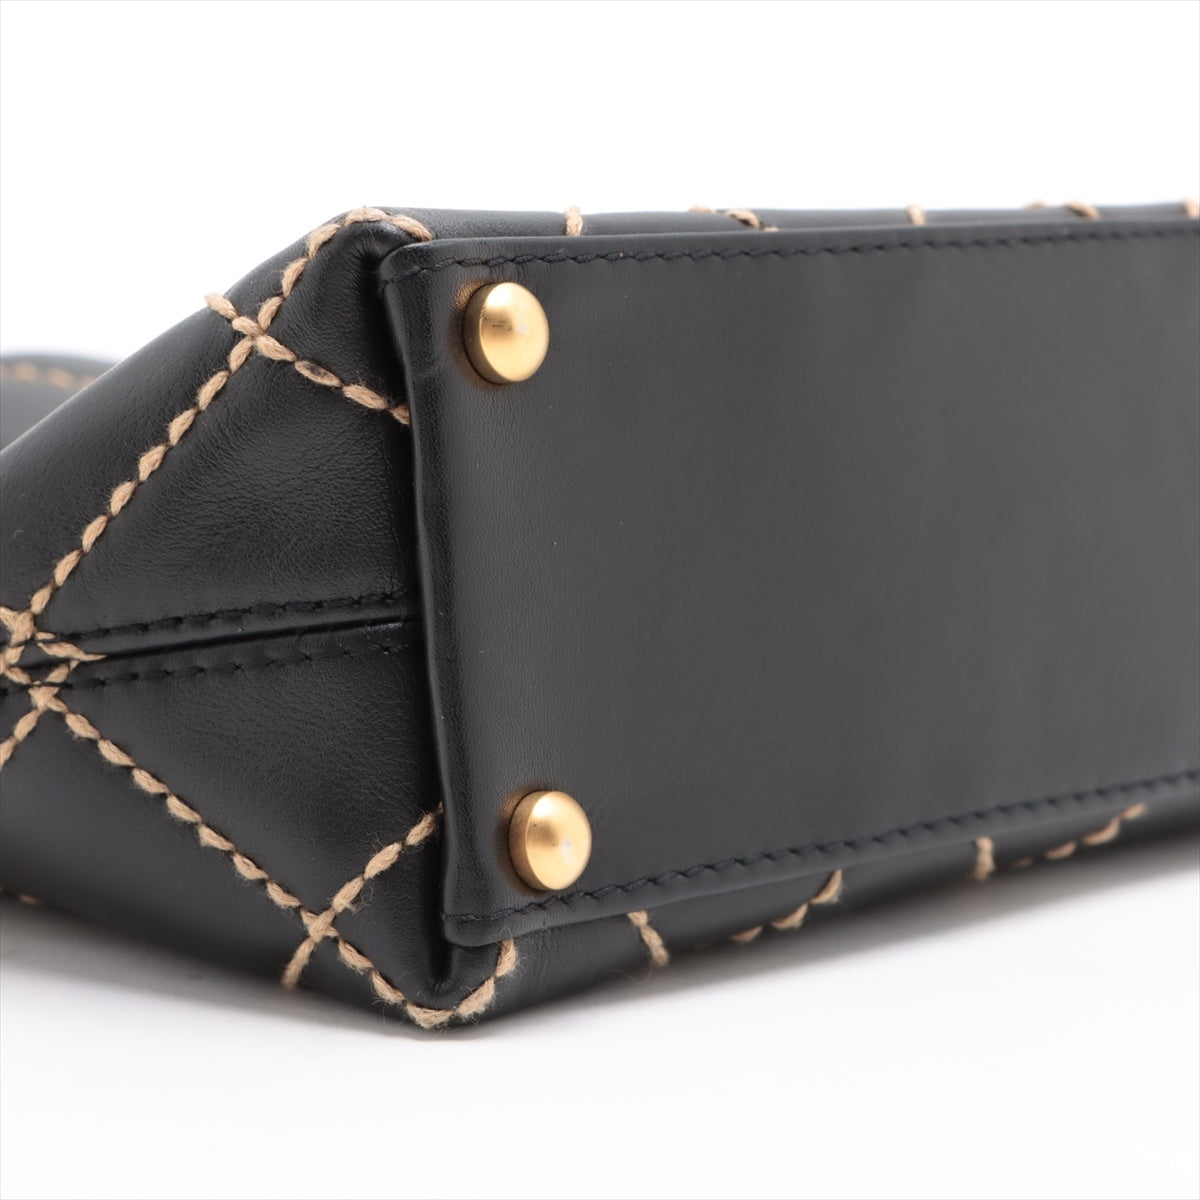 Chanel Wild Stitch Leather Handbag Black matte gold hardware 7XXXXXX